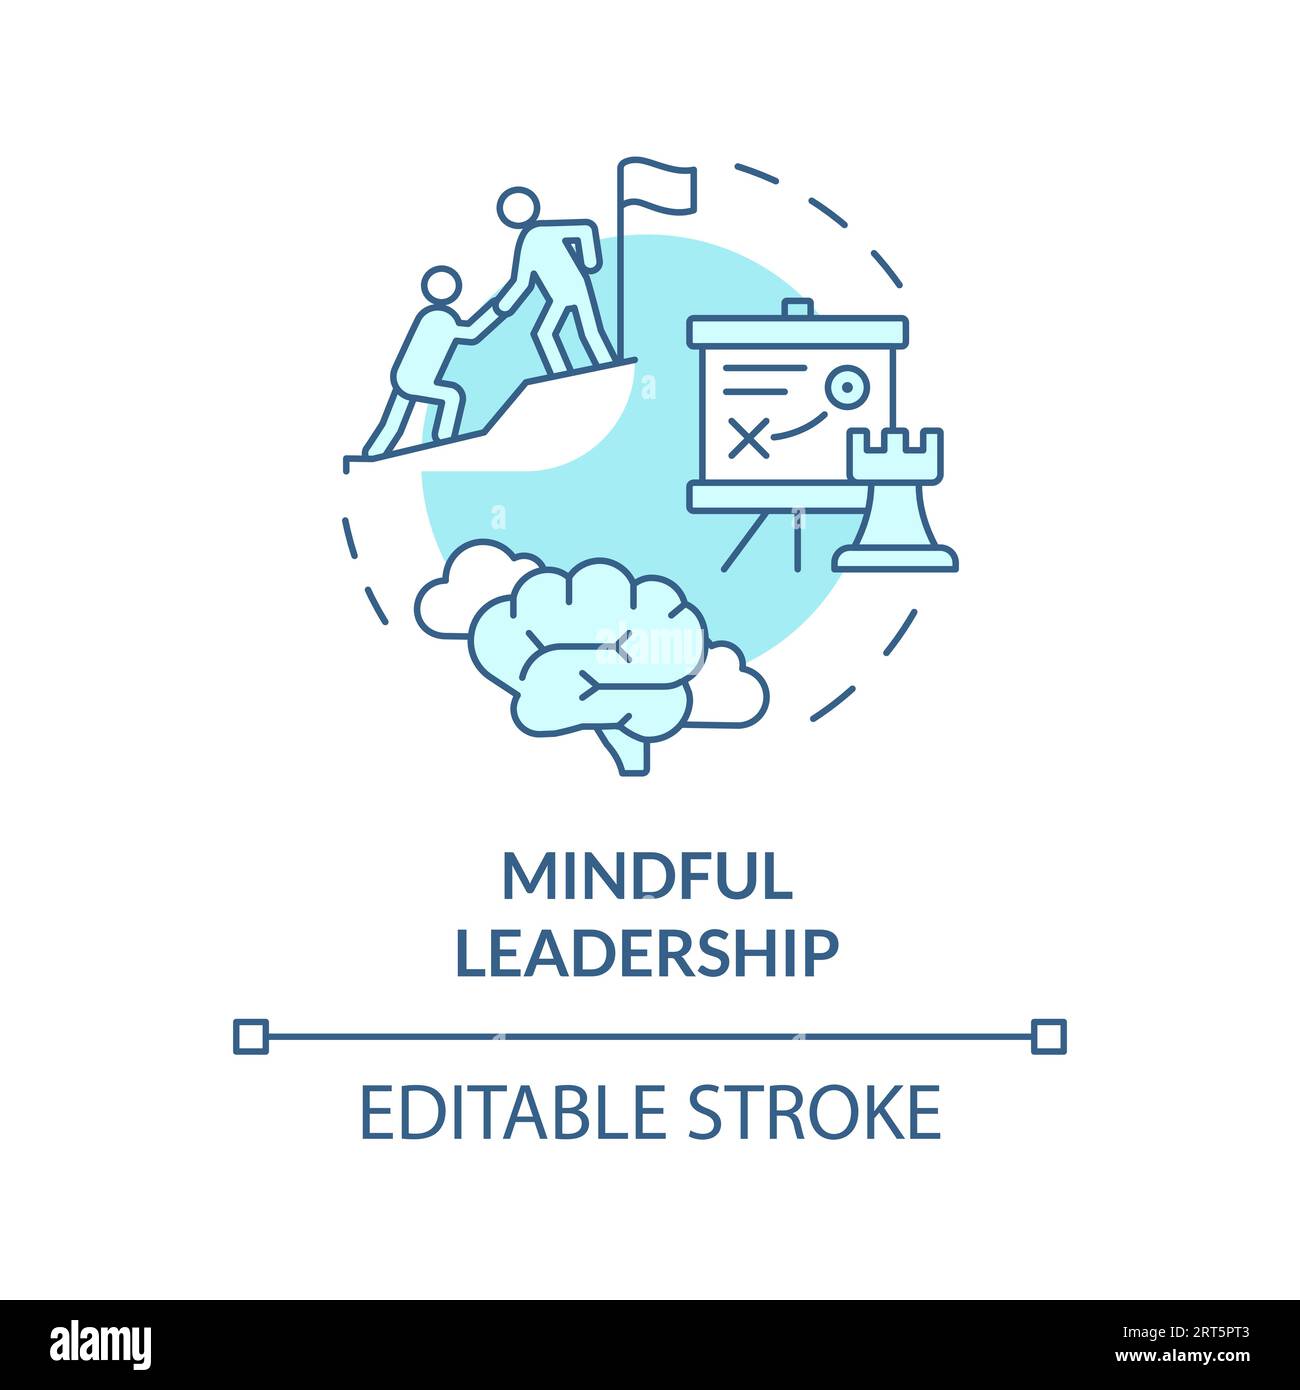 Mindful Leadership Stock Illustrations – 297 Mindful Leadership